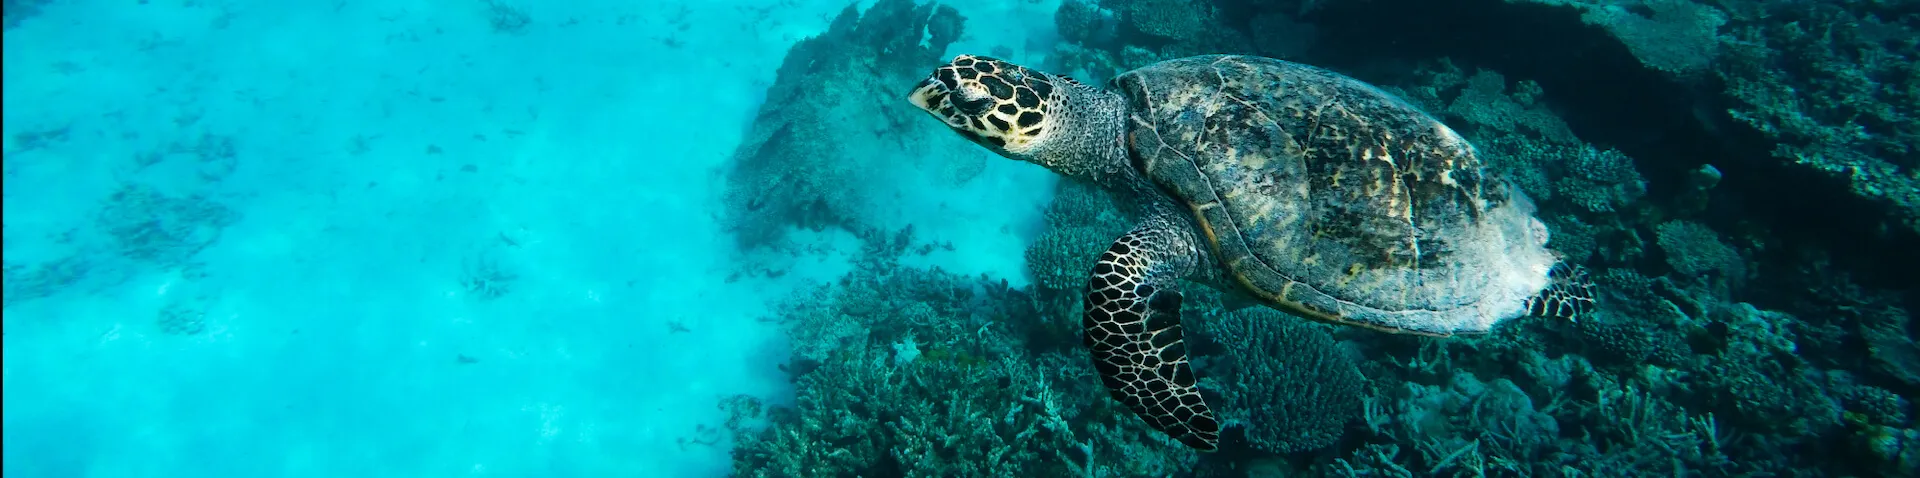 Unterwasser Schildkröten Fotografie